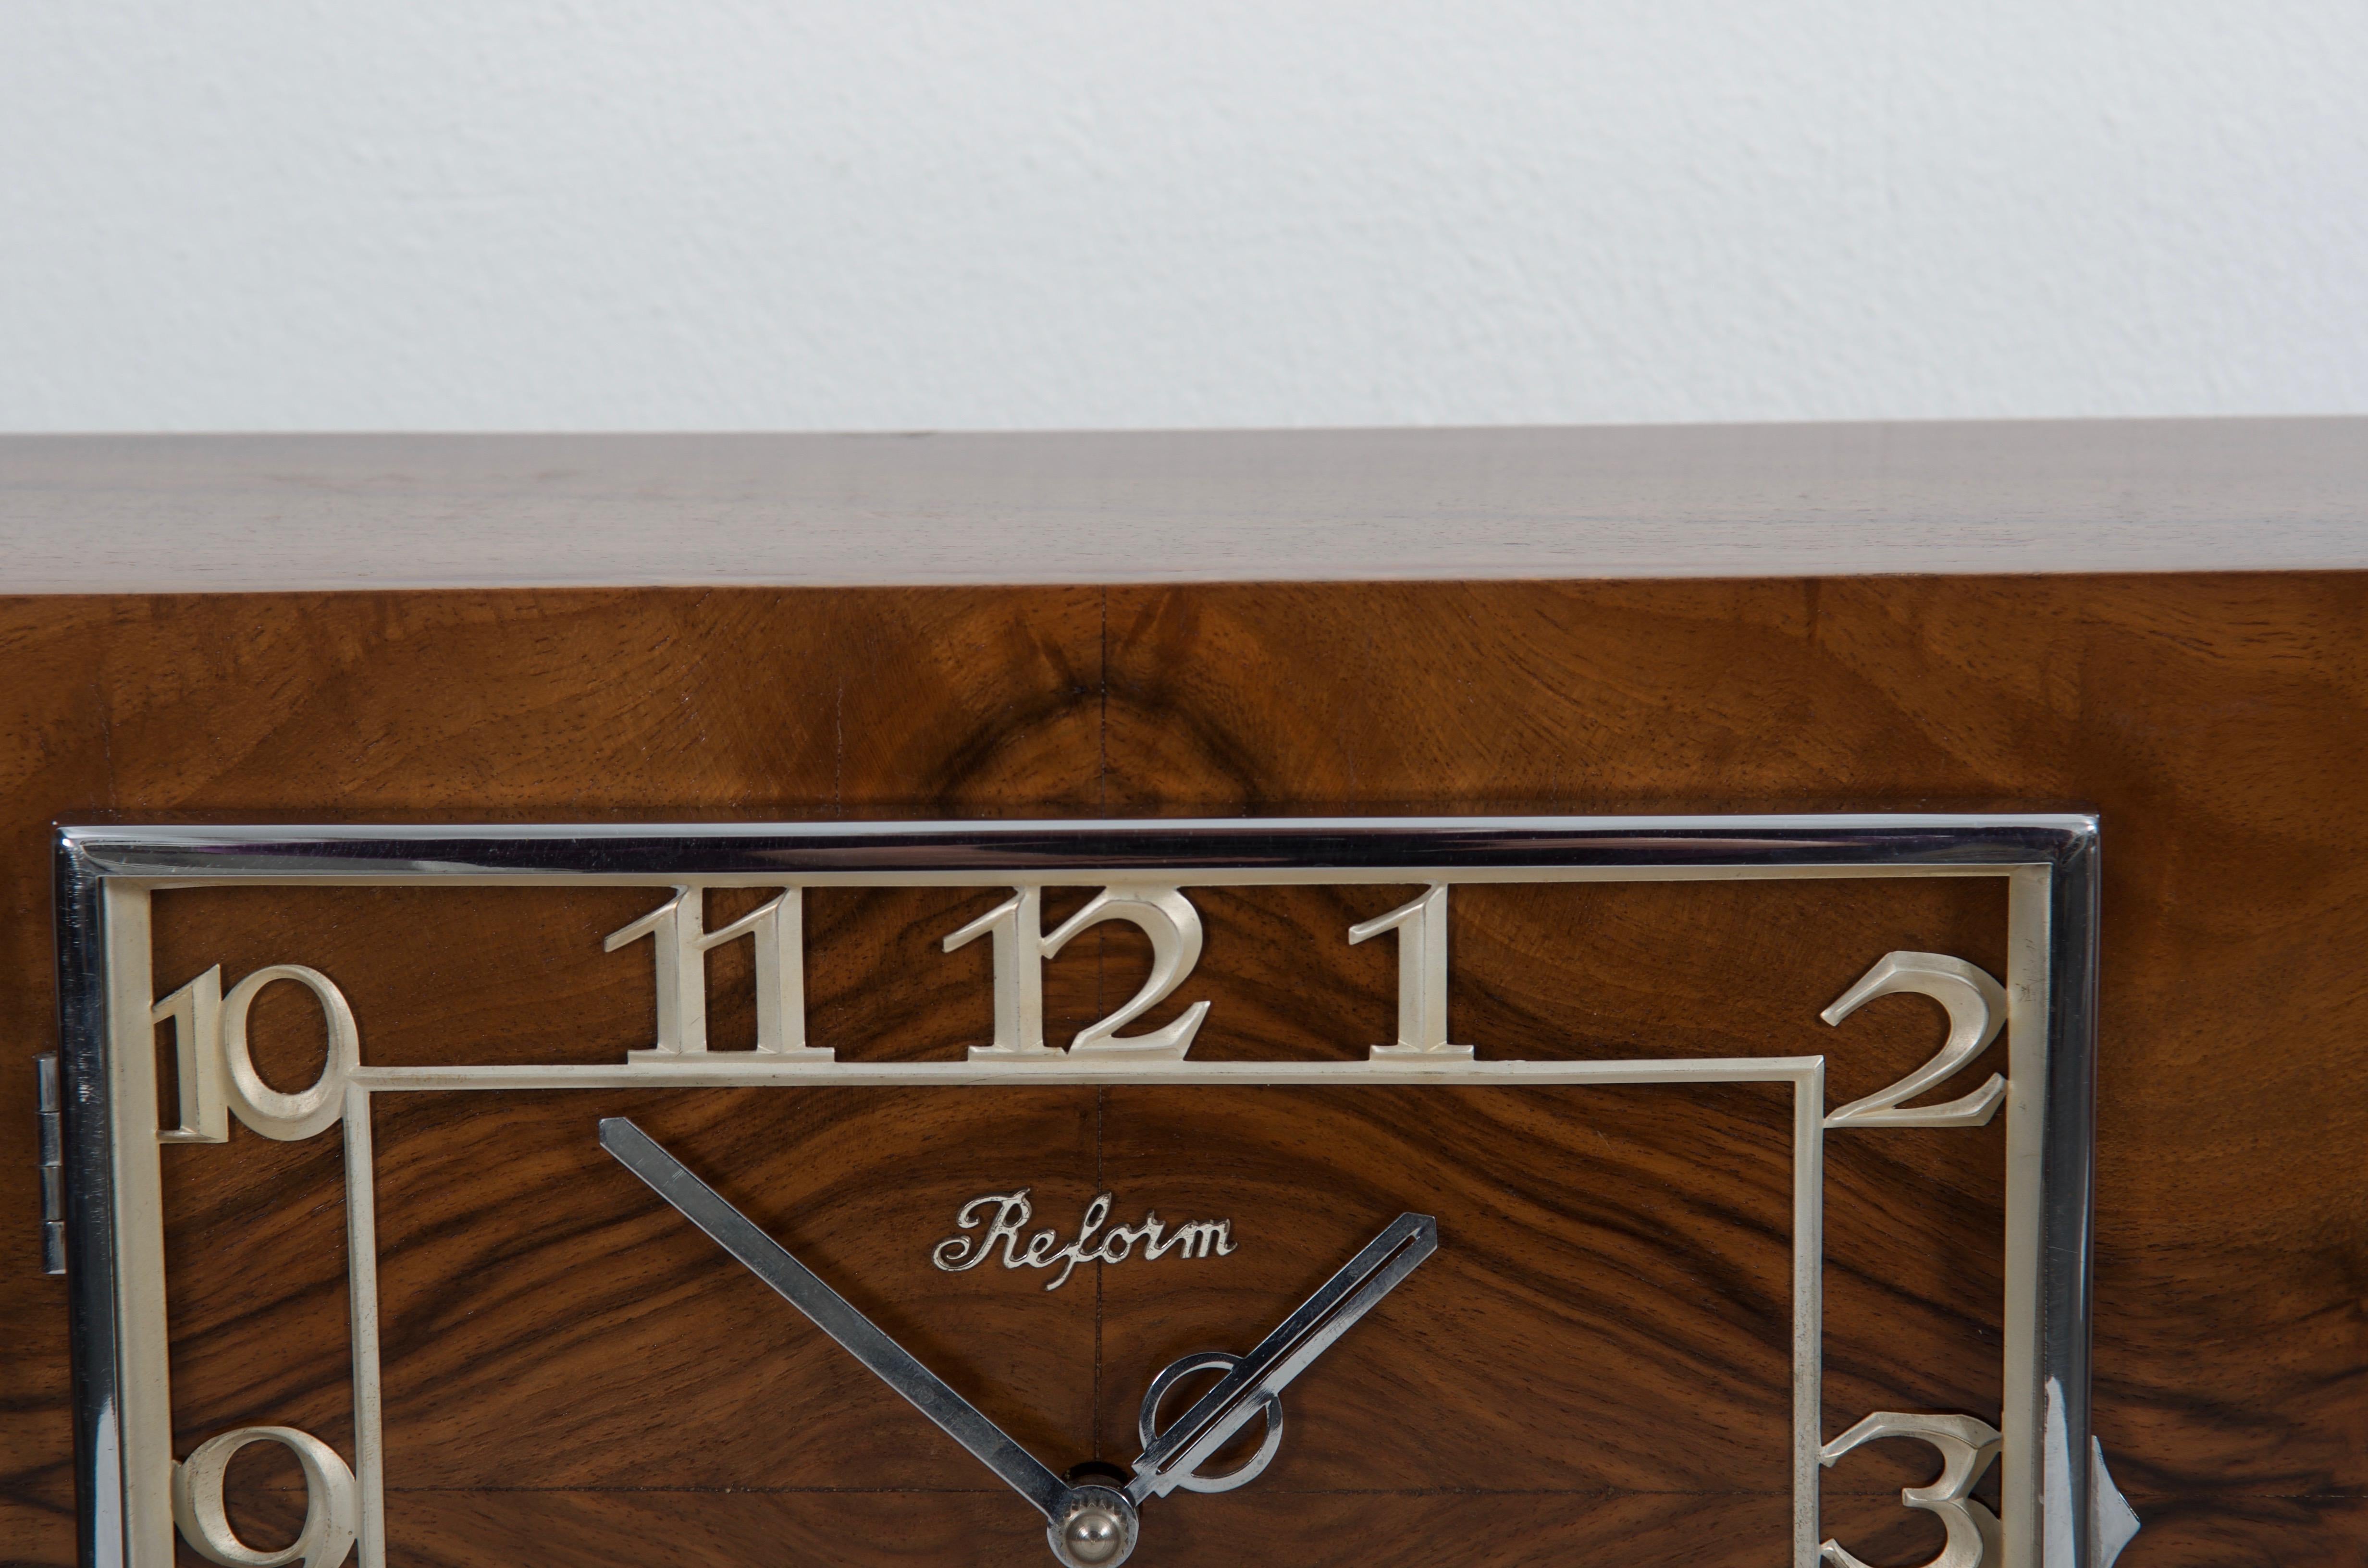 art deco wooden mantel clock